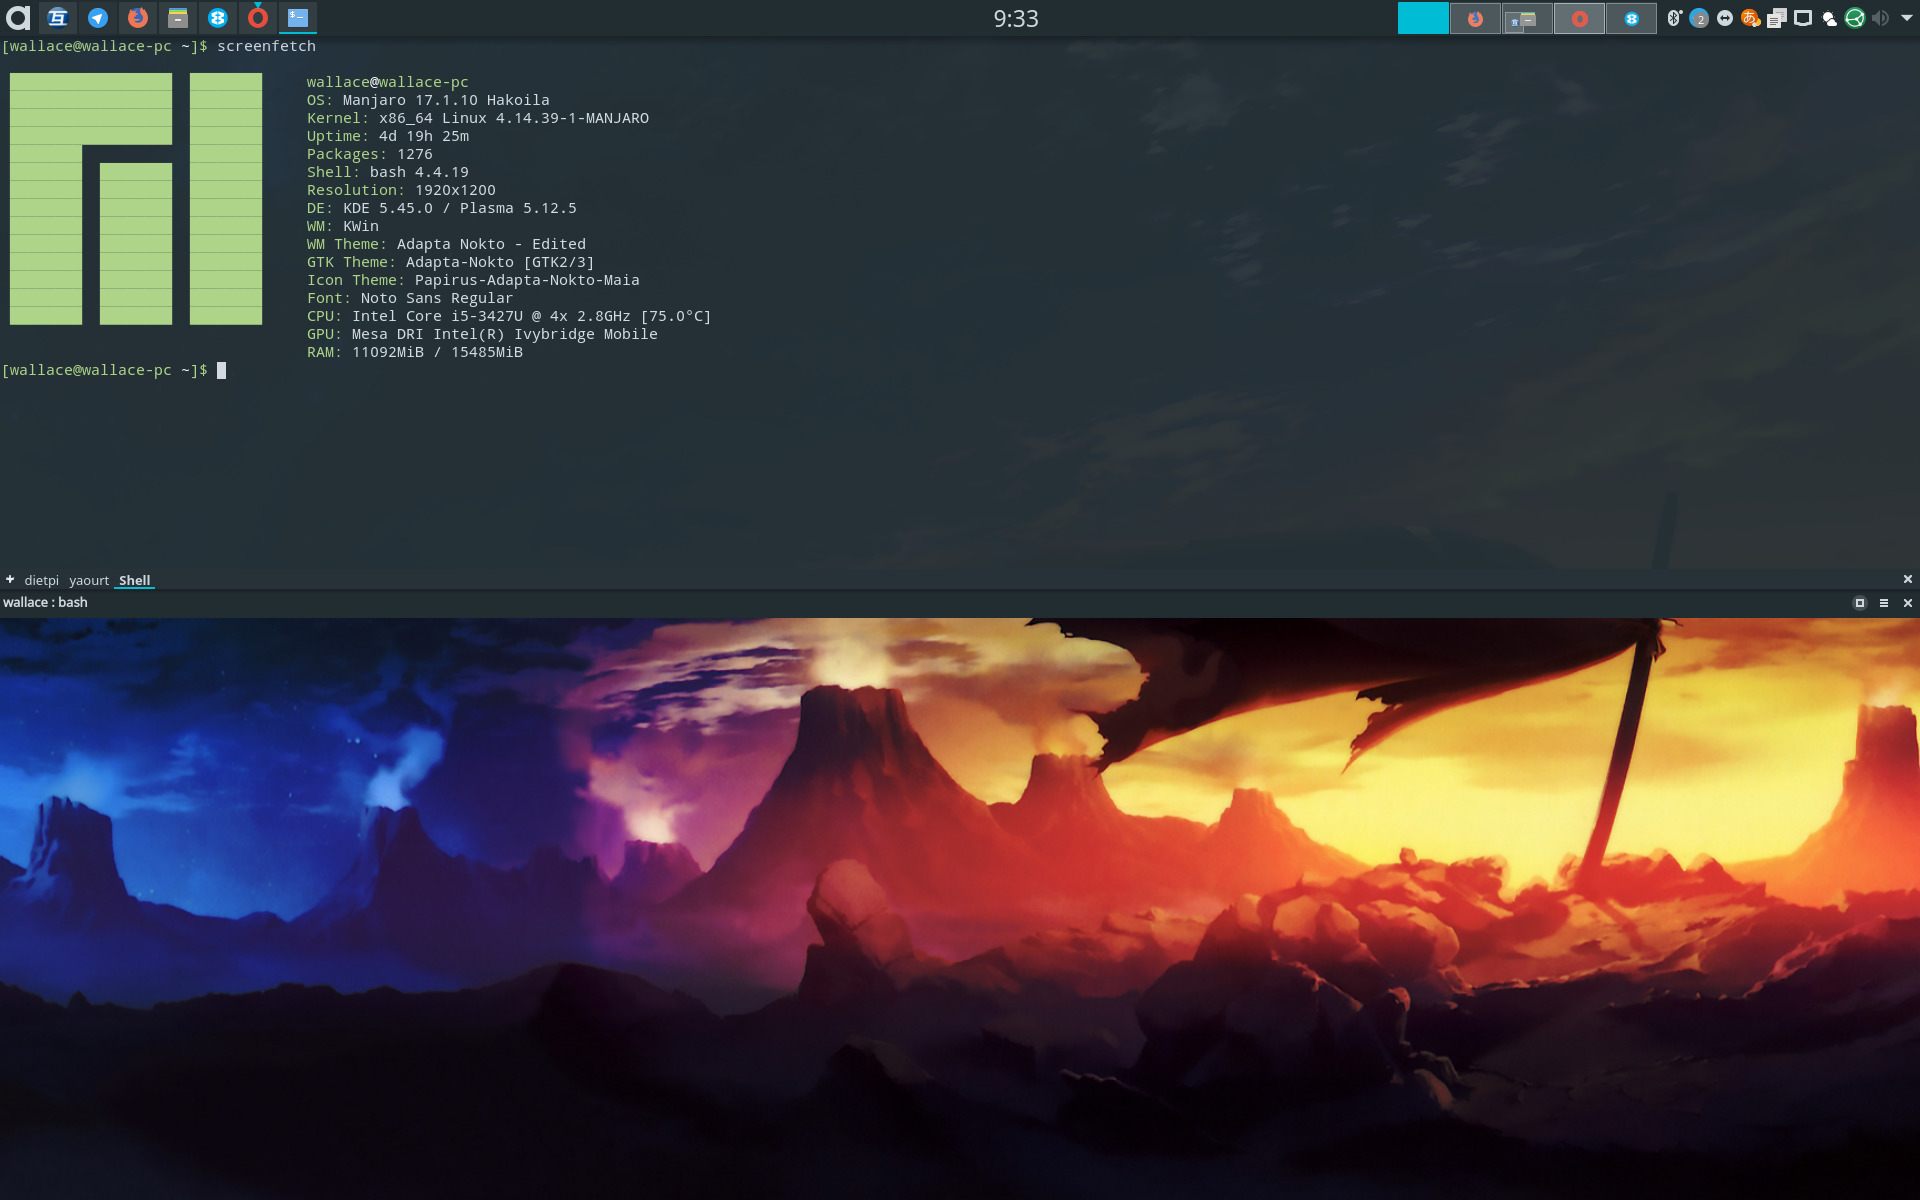 My Manjaro KDE setup feature image